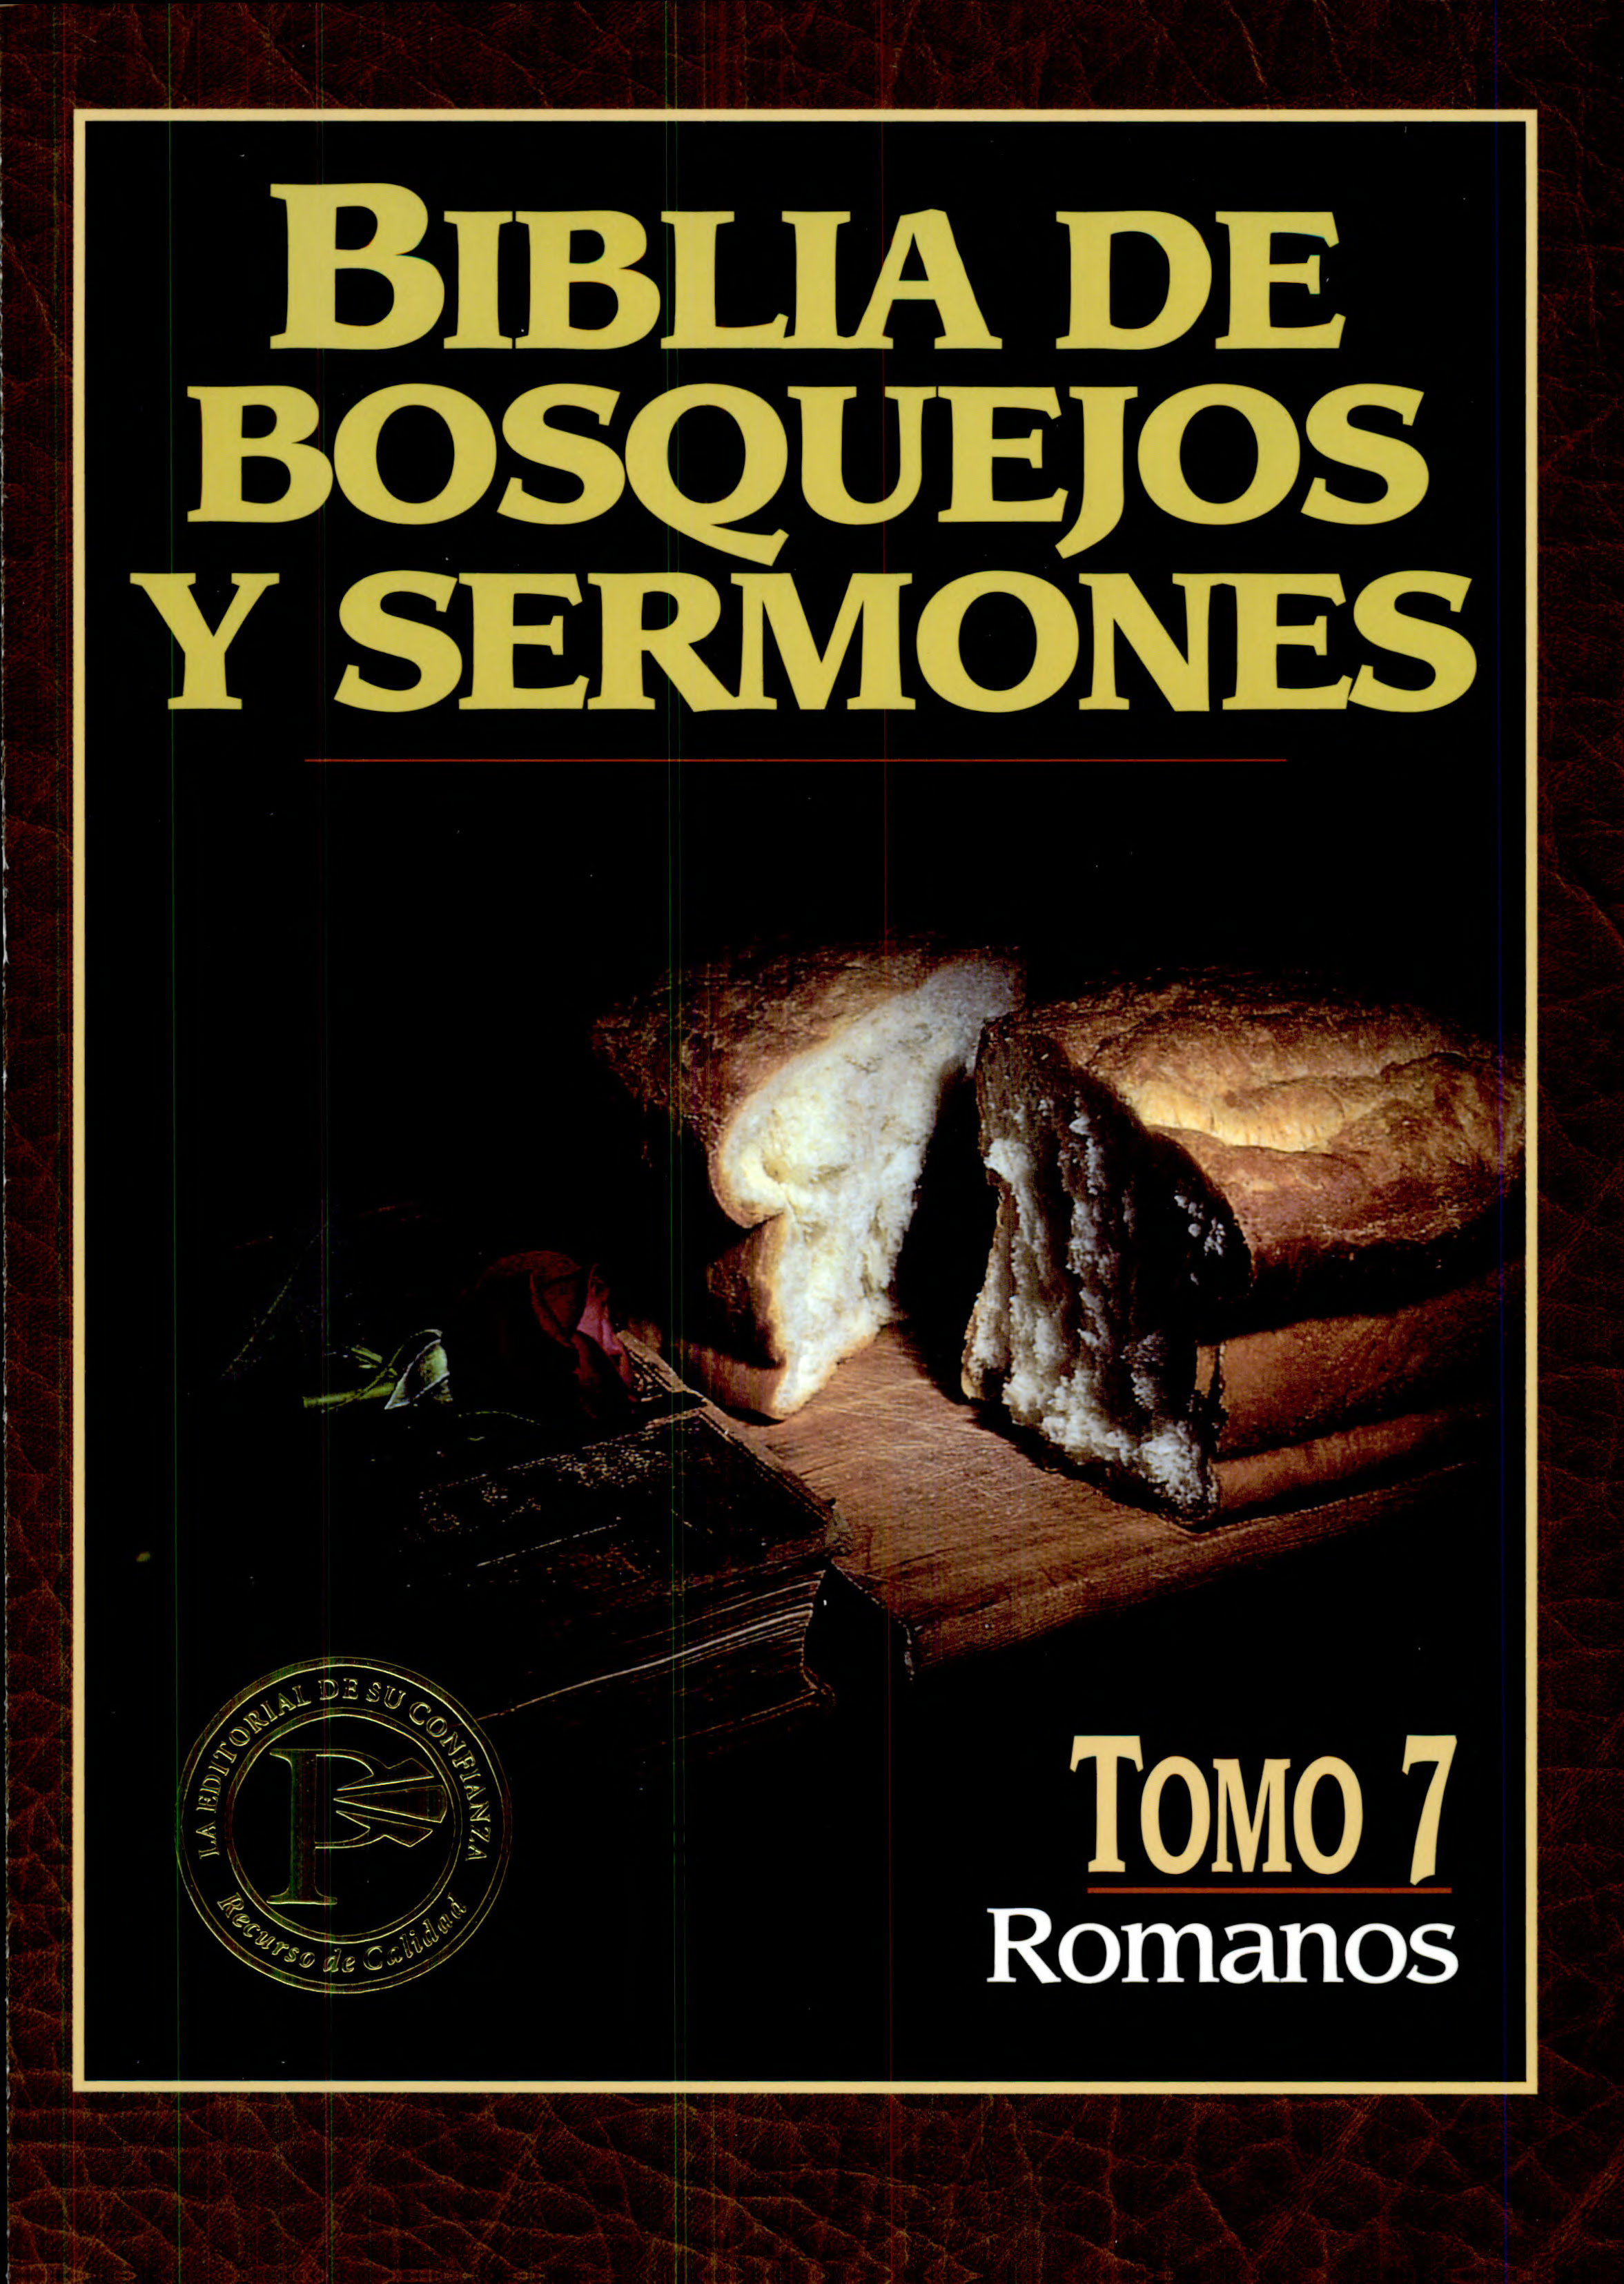 Biblia de Bosquejos y Sermones NT 7 Romanos